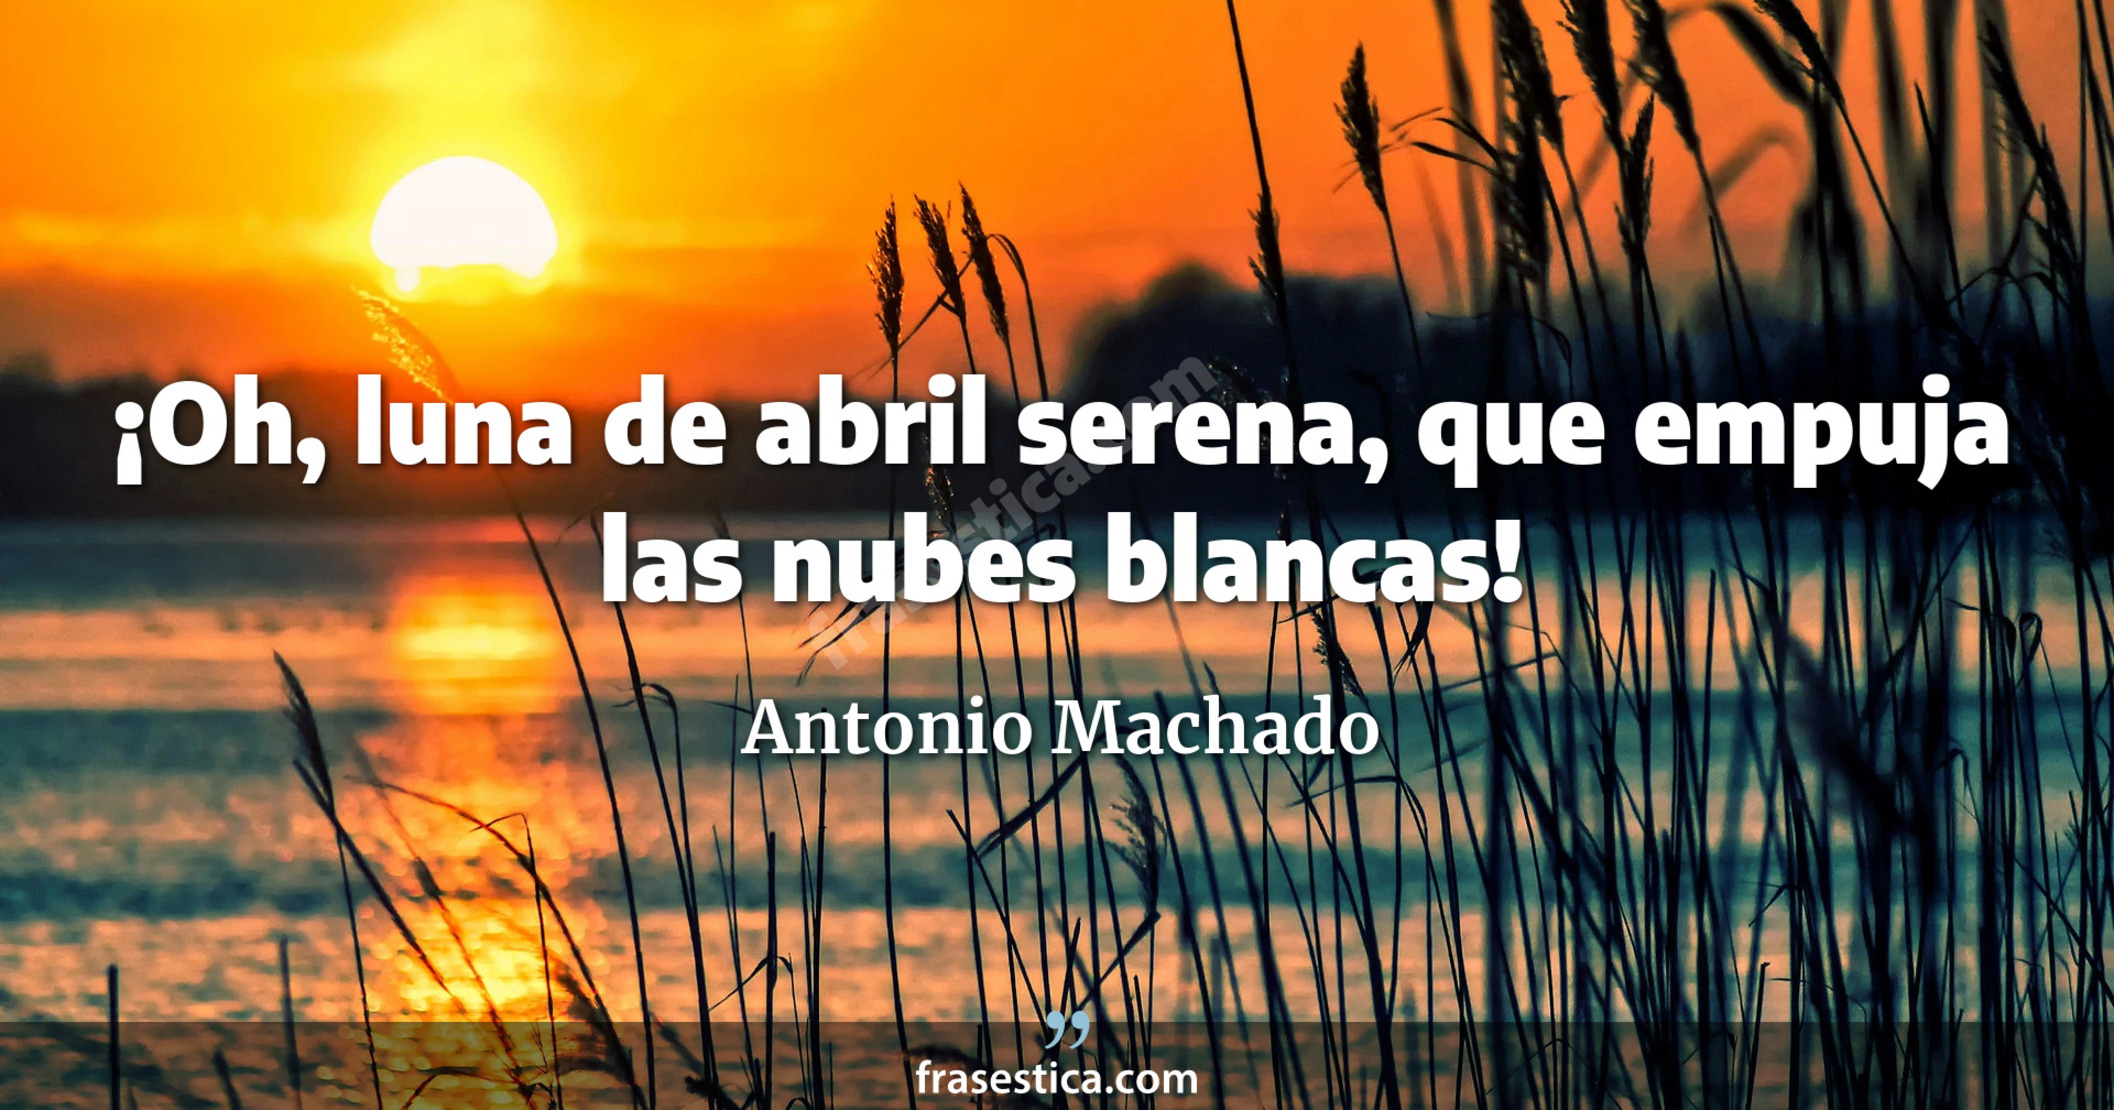 ¡Oh, luna de abril serena, que empuja las nubes blancas! - Antonio Machado